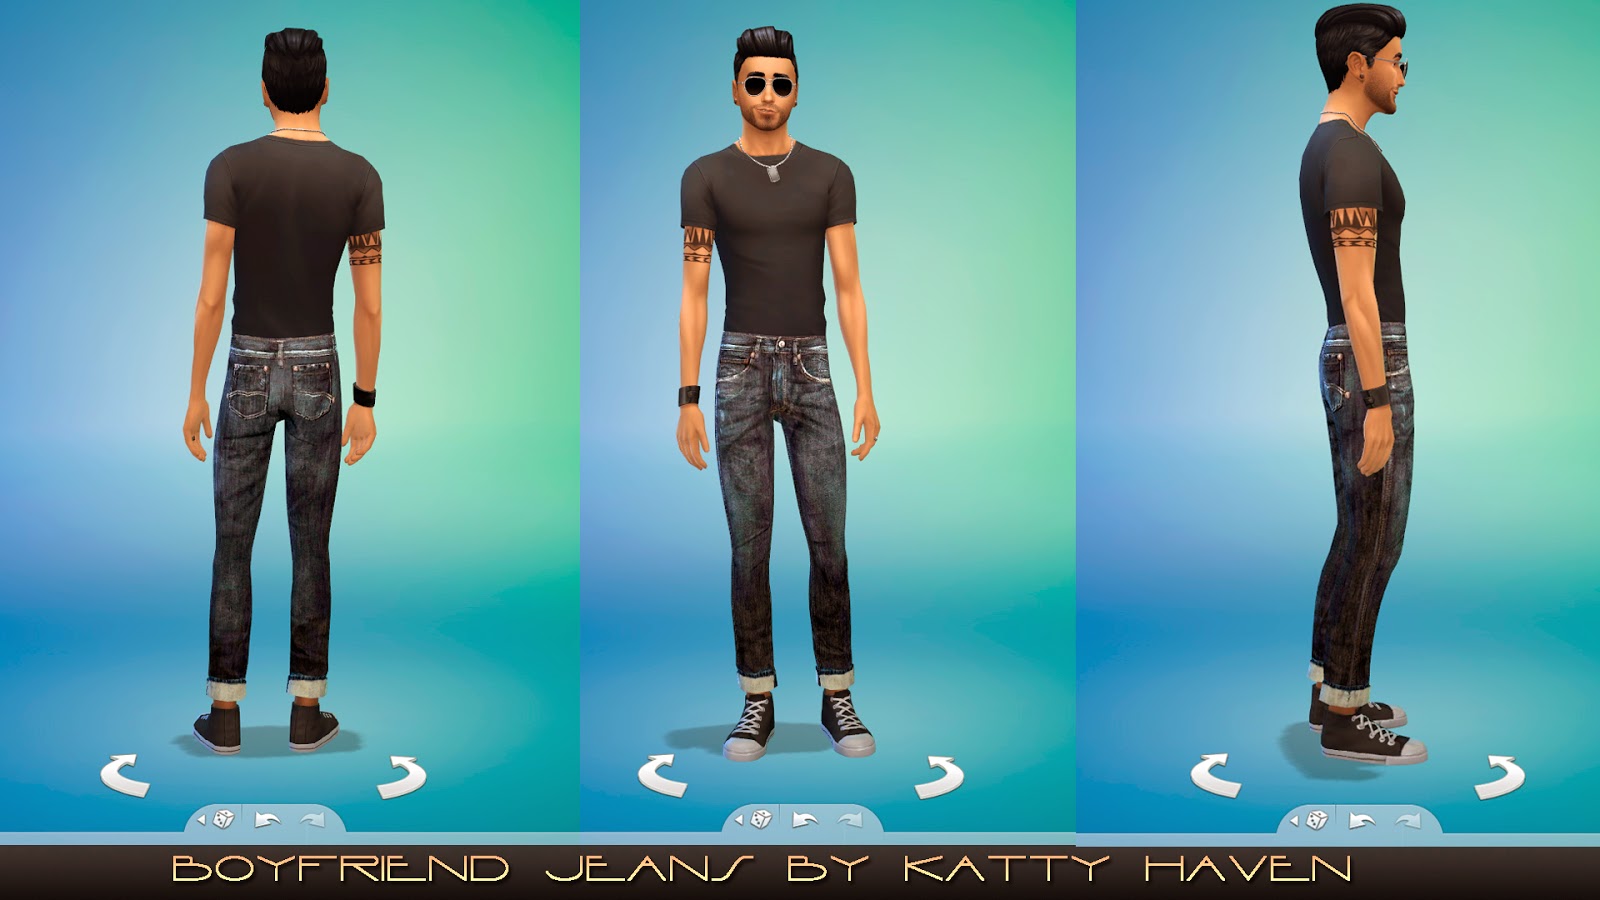 Boyfriend jeans for men by kattyhaven.